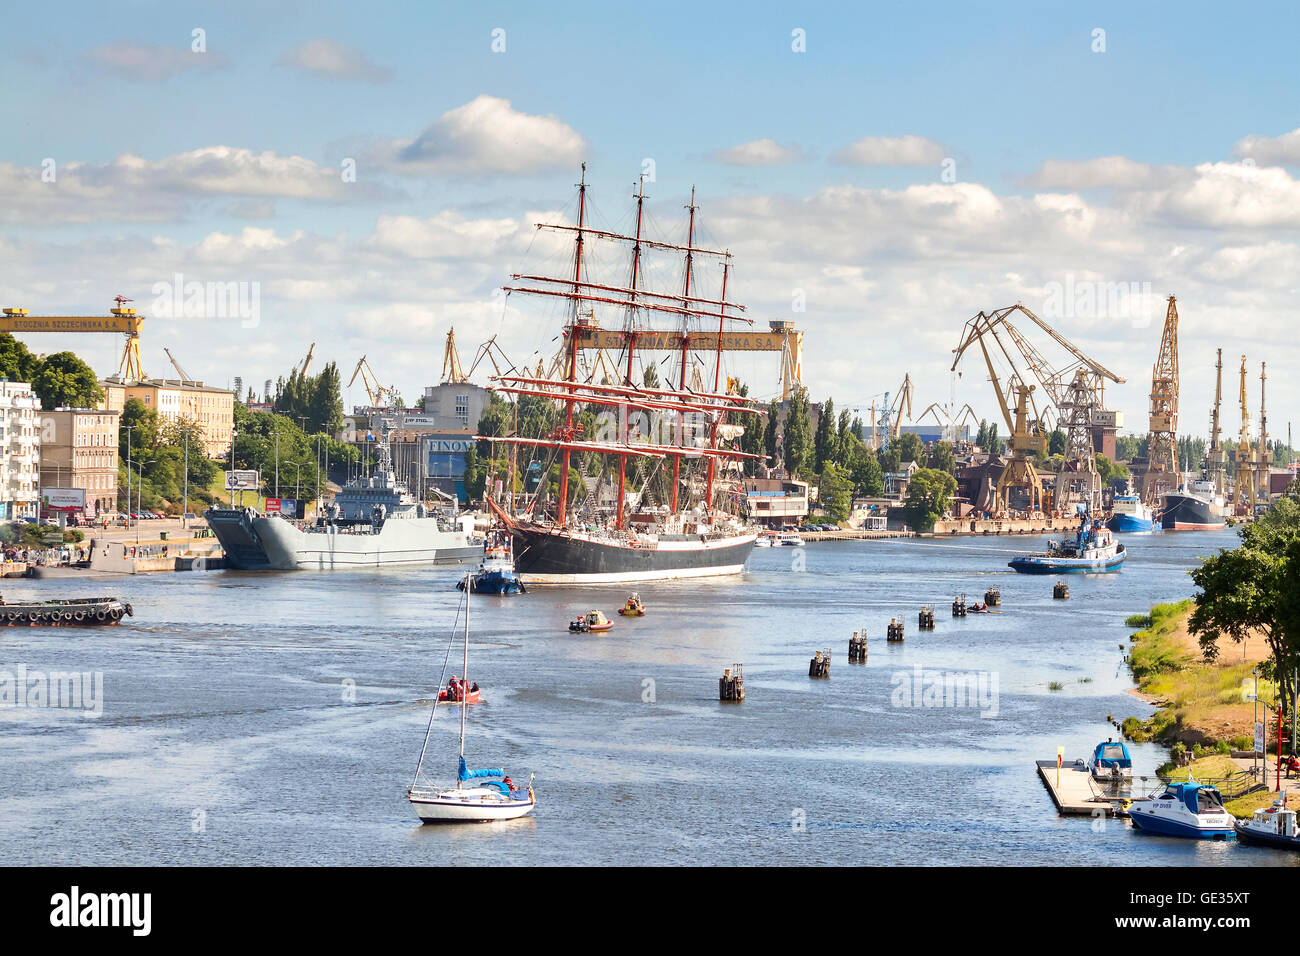 Russische Sedow, gehört zu den größten teilnehmenden Segelschiffen, den Hafen zu verlassen. Stockfoto